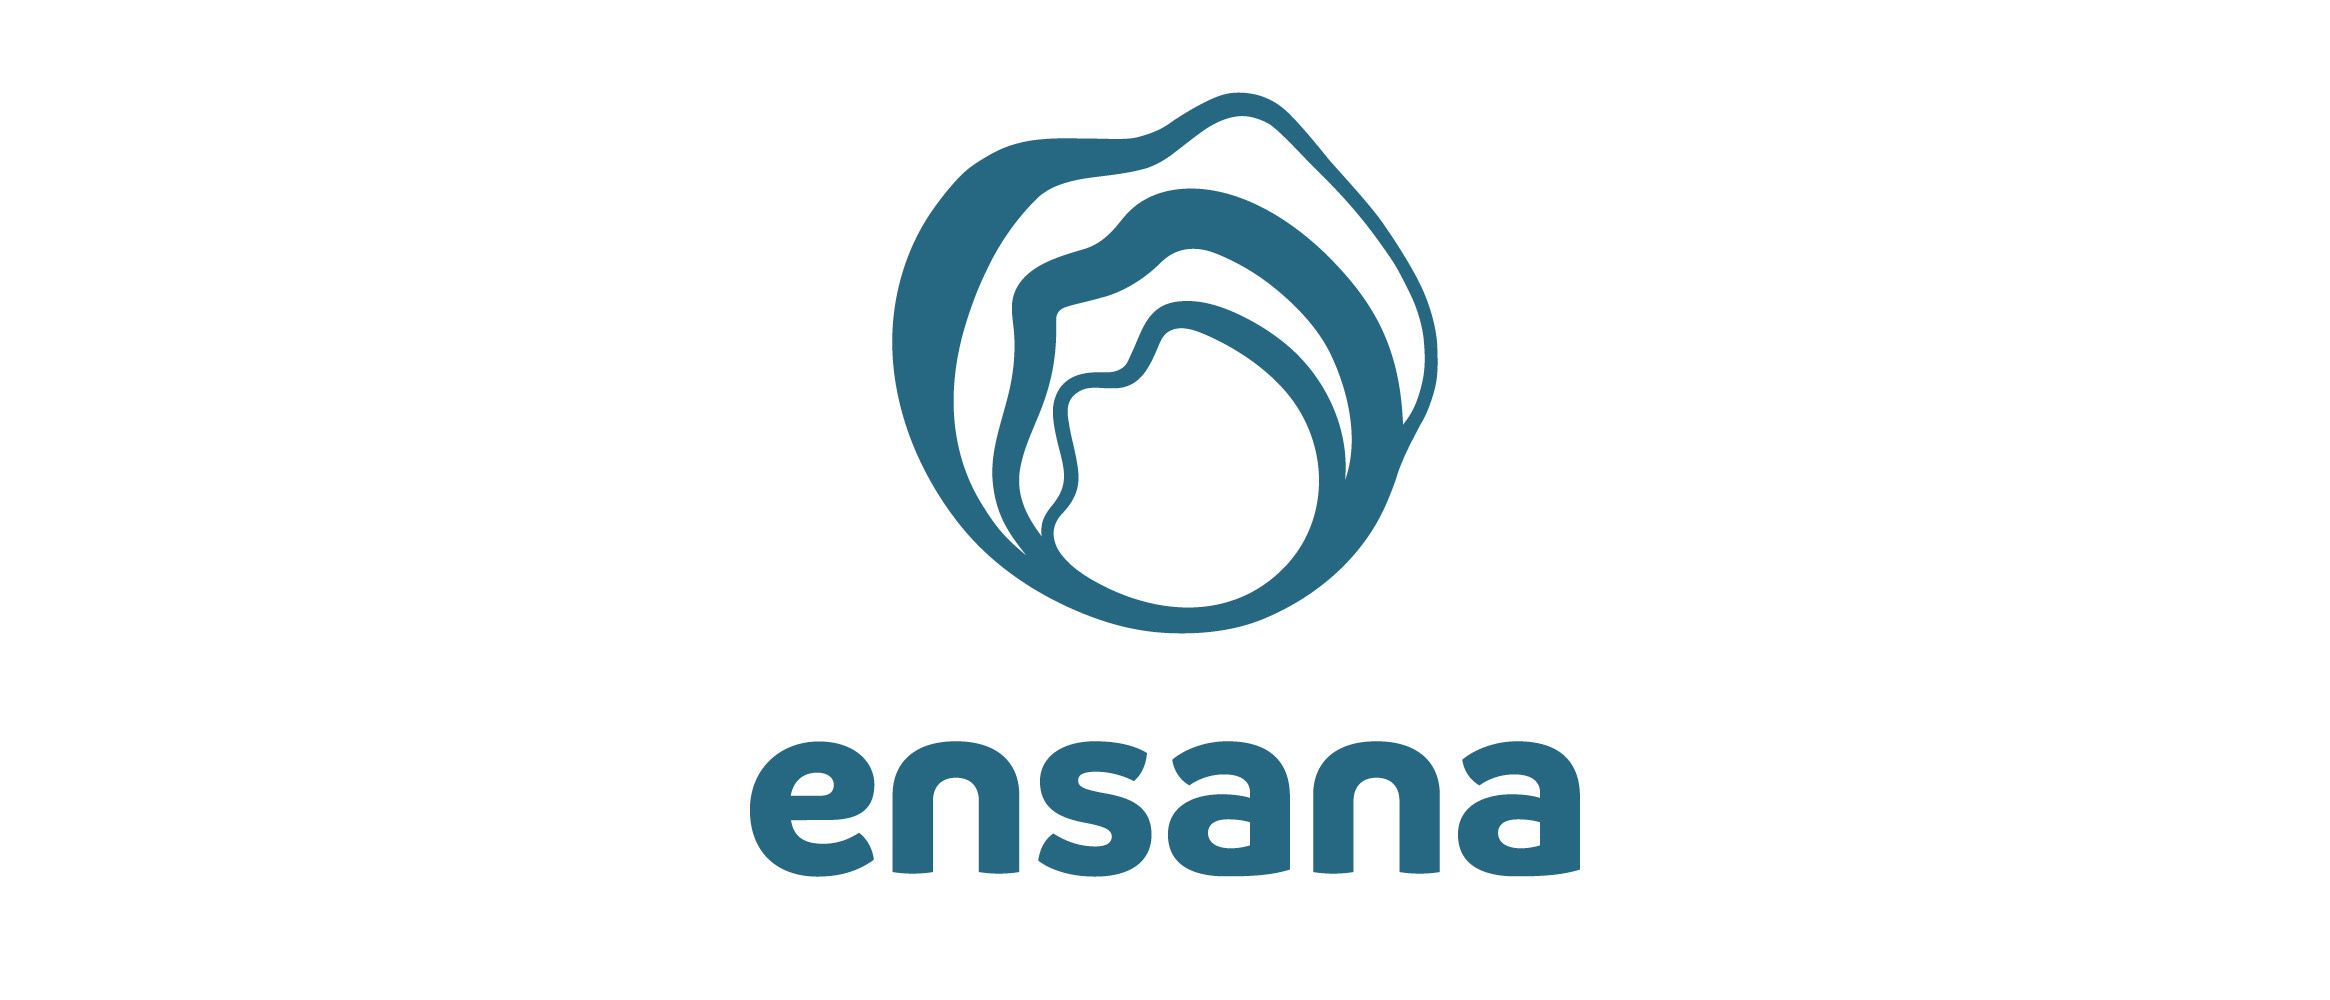 Ensana Hotels